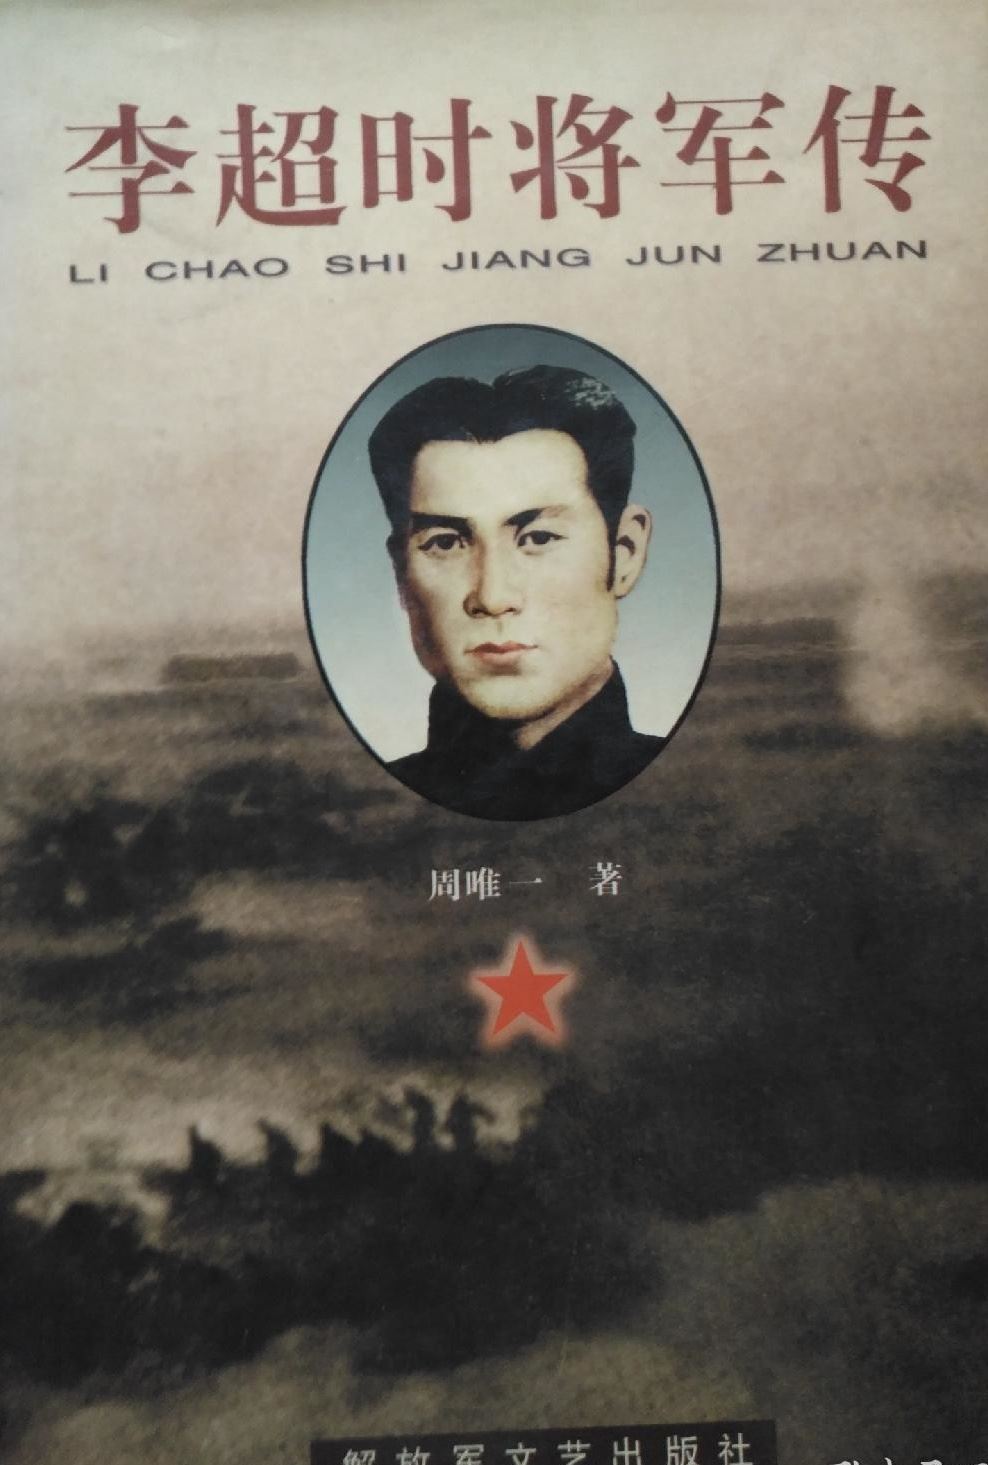 中国工农红军第十四军政委李超时与李源潮的特殊关系考证